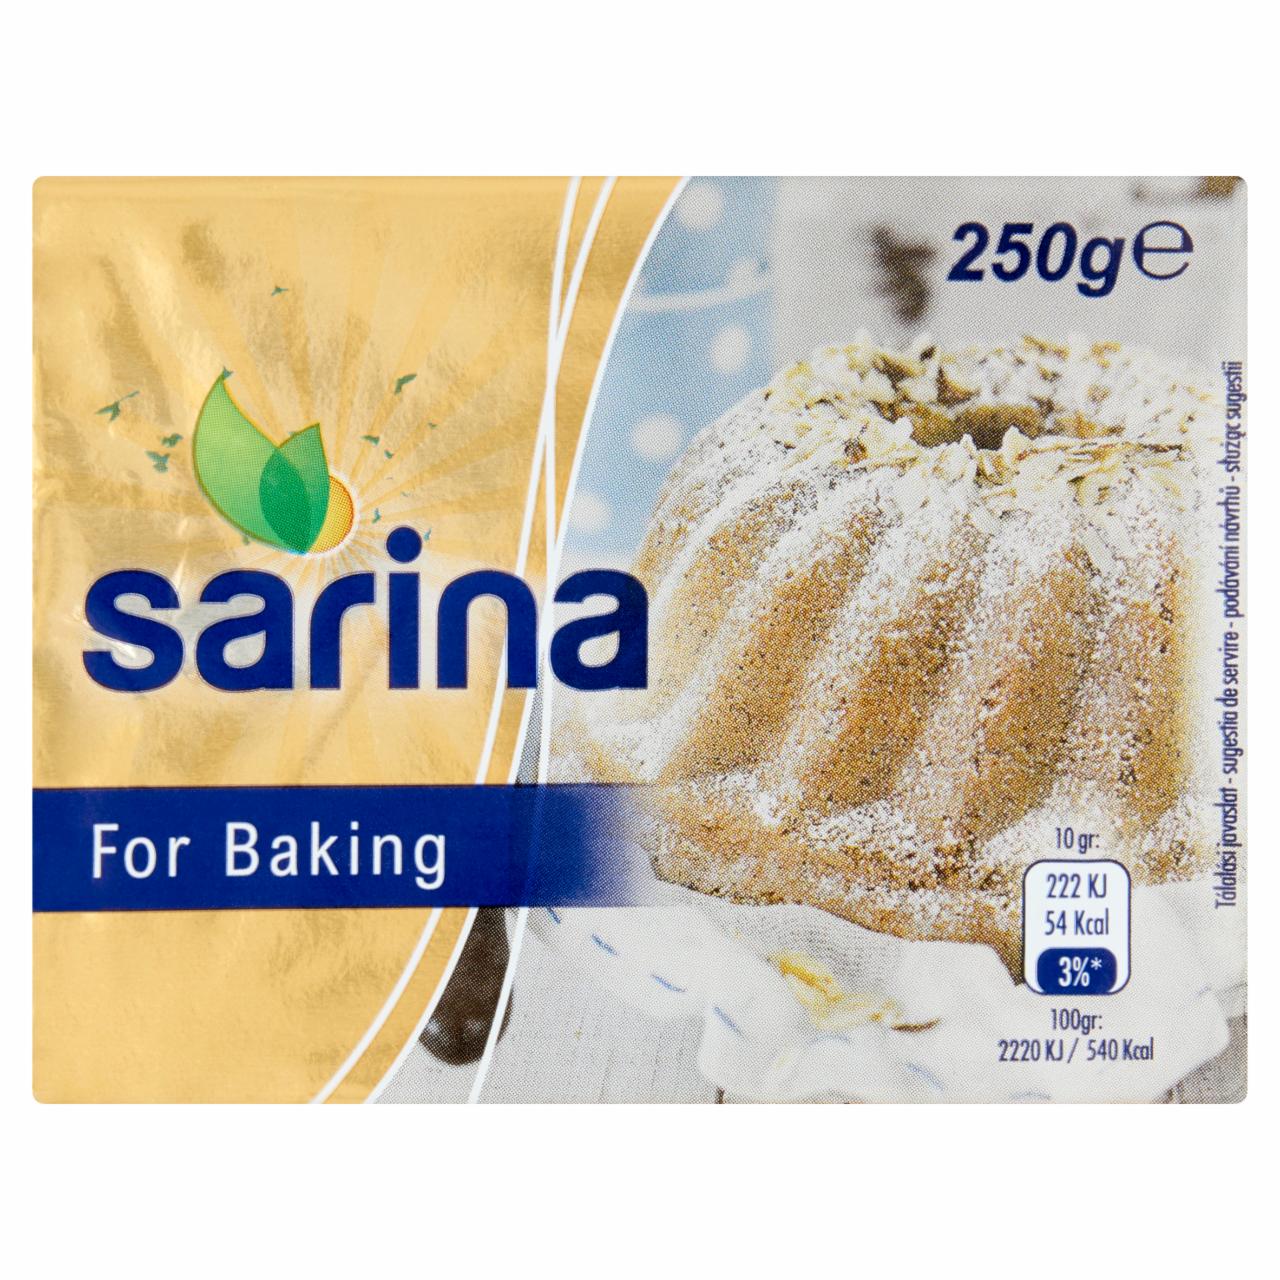 Képek - Sarina három-negyed zsíros margarin 250 g